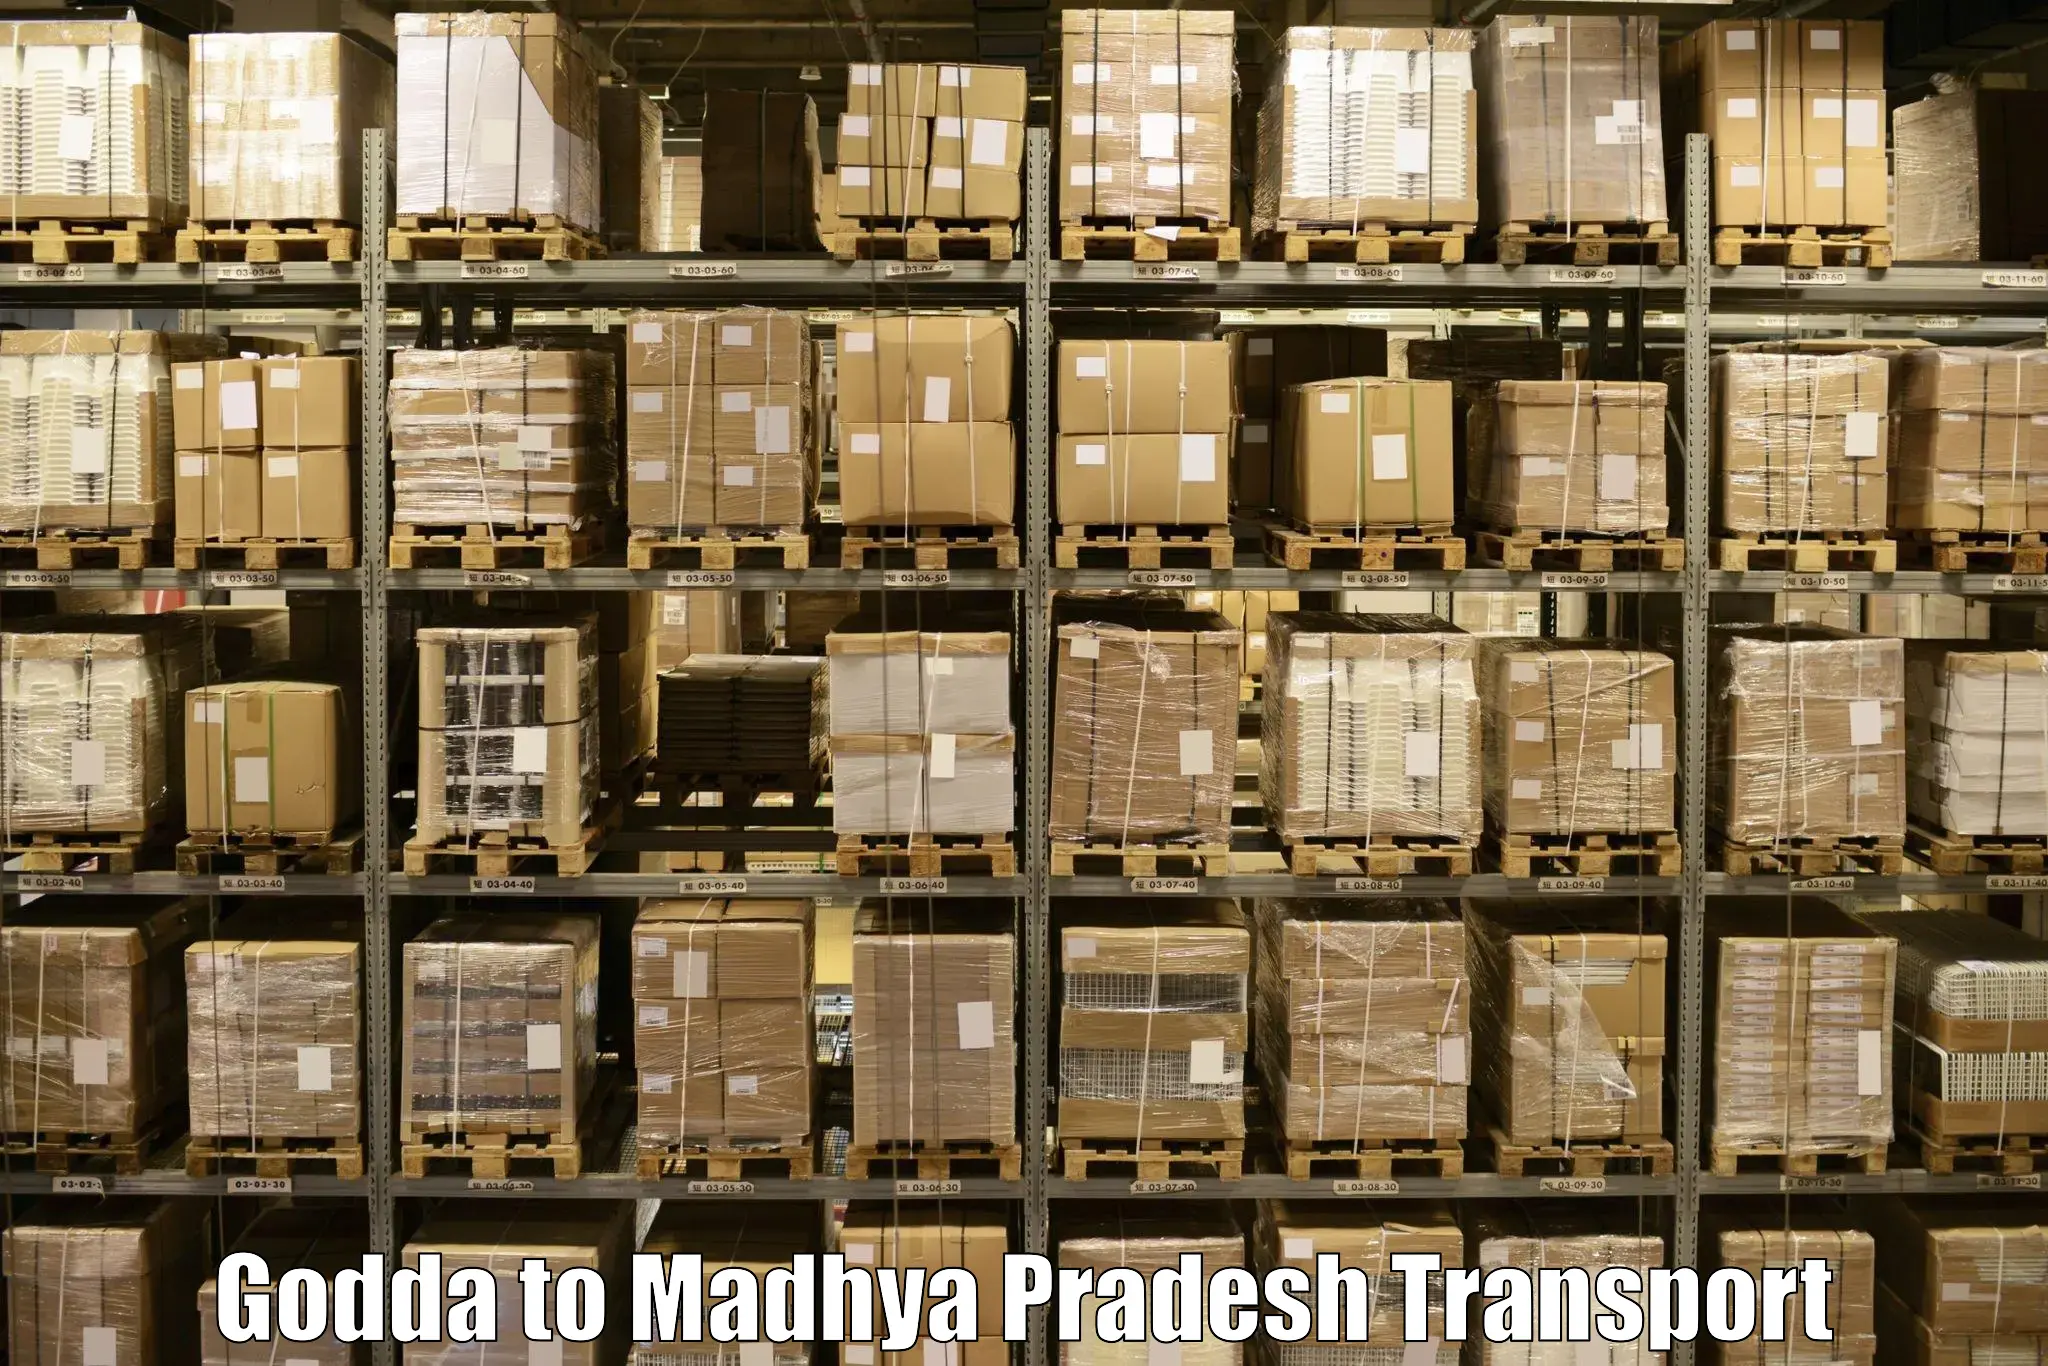 Cargo transport services Godda to Rehli